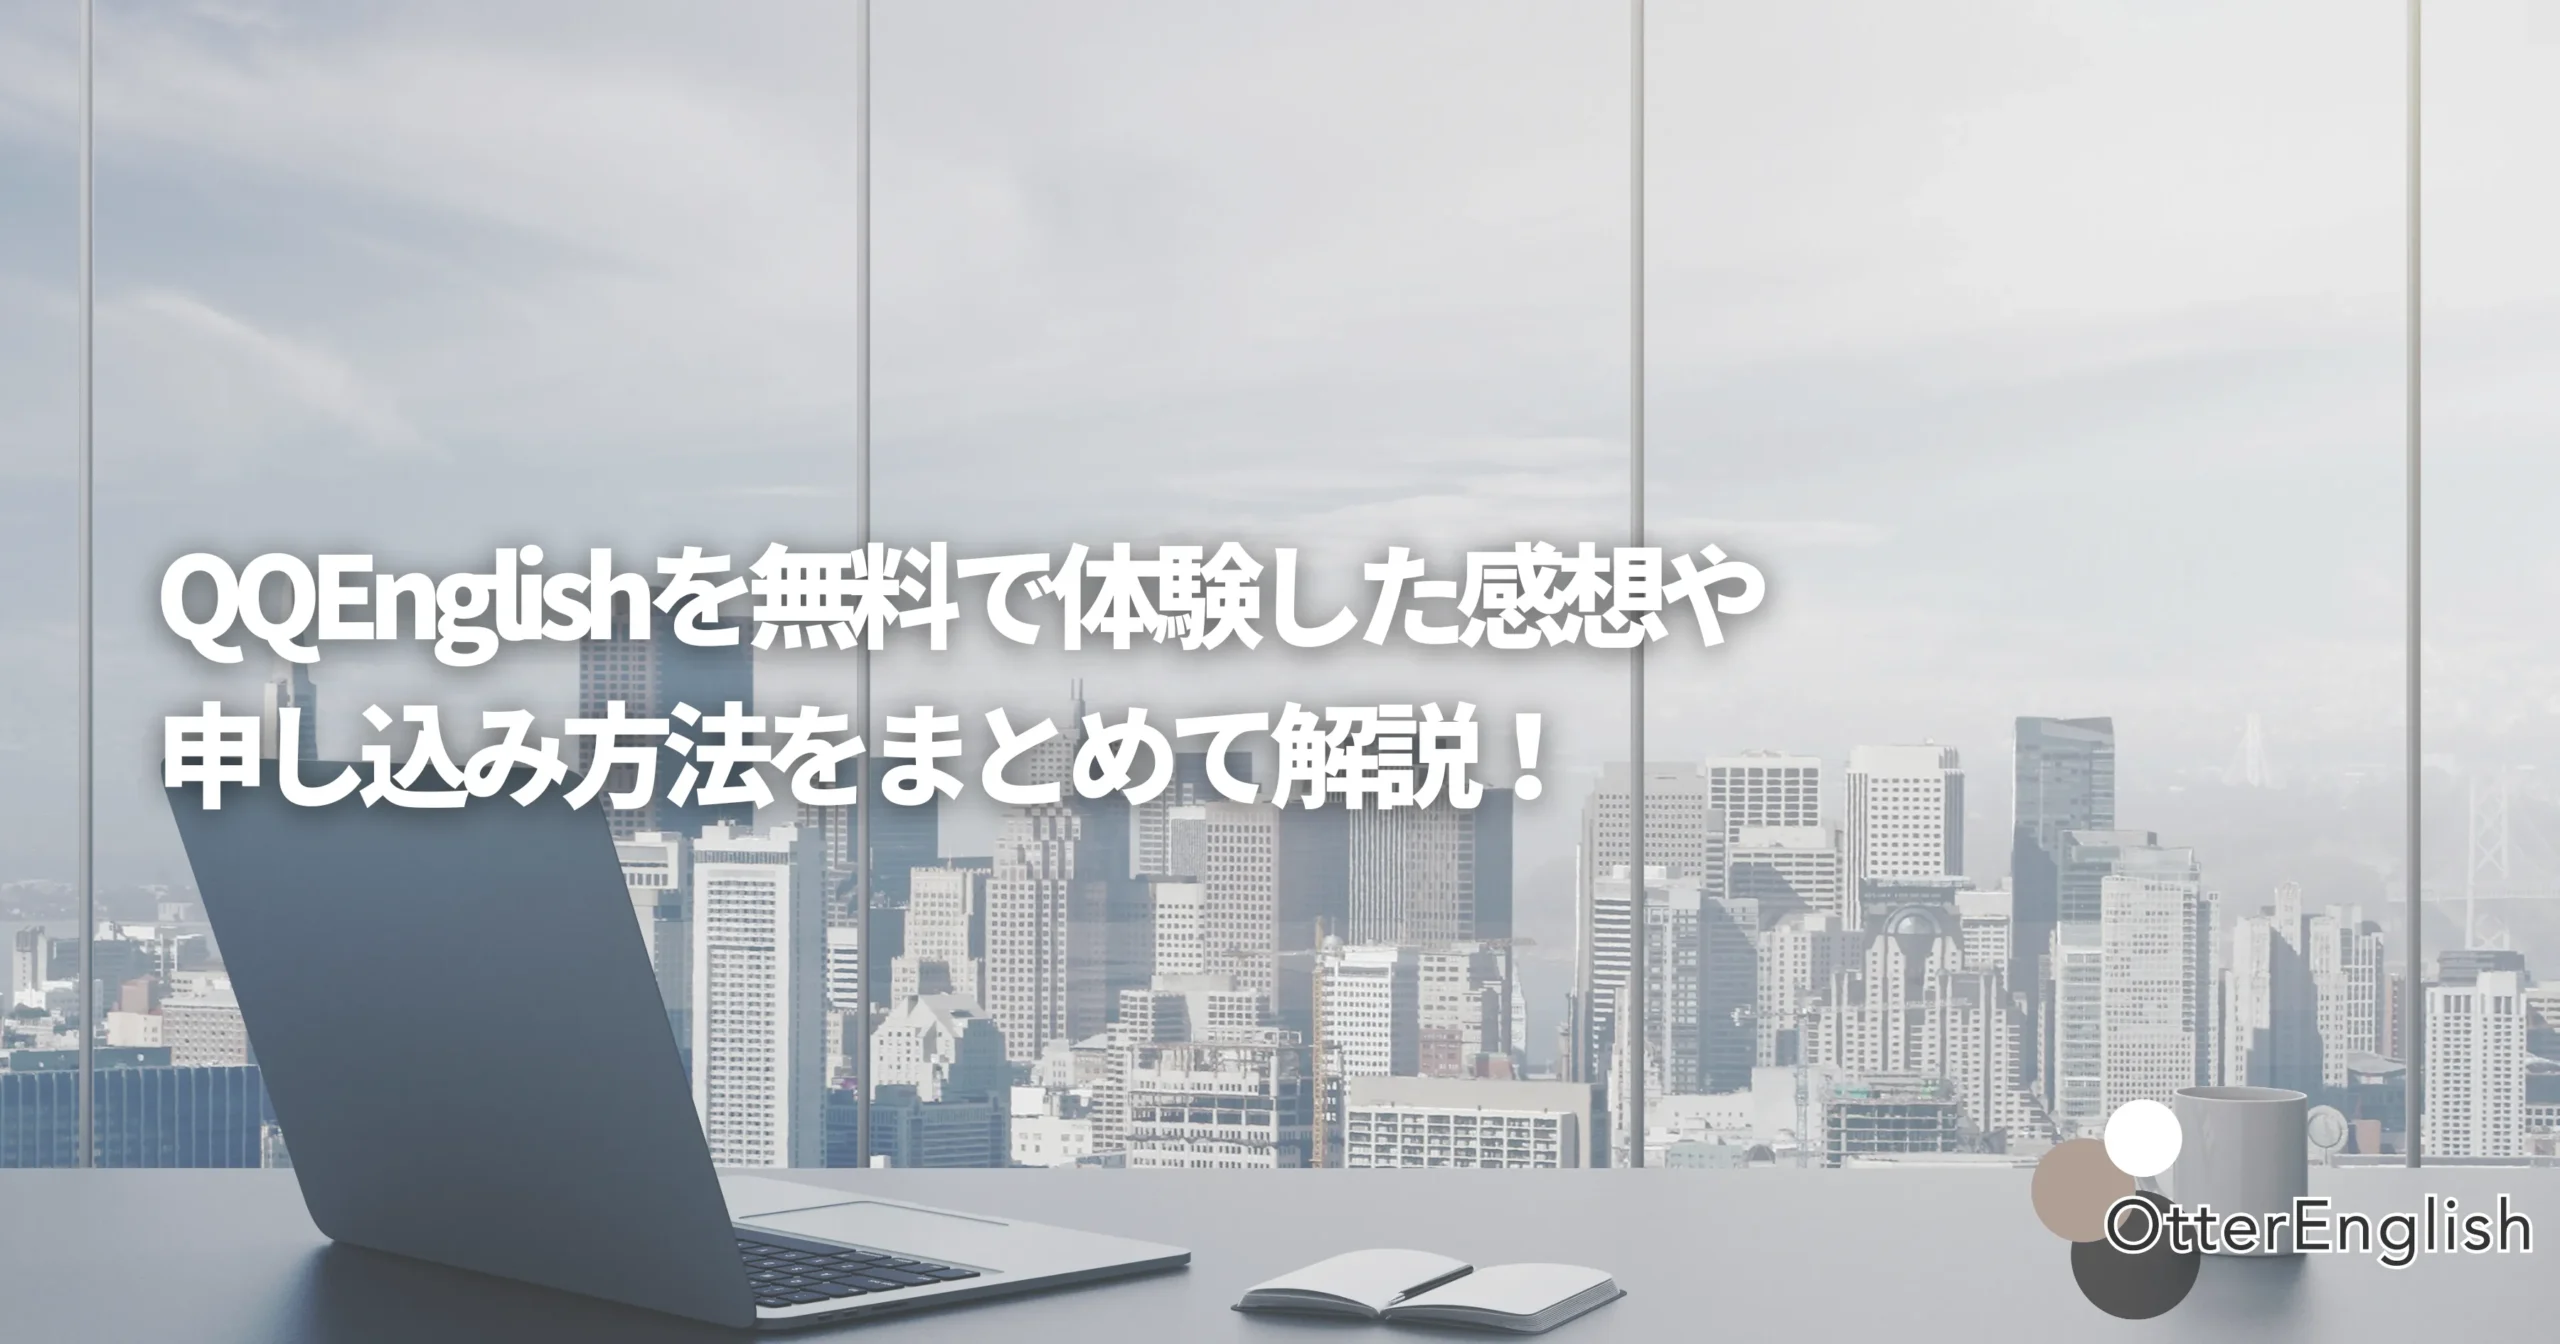 QQEnglishの無料体験で使われるオフィスを表した画像